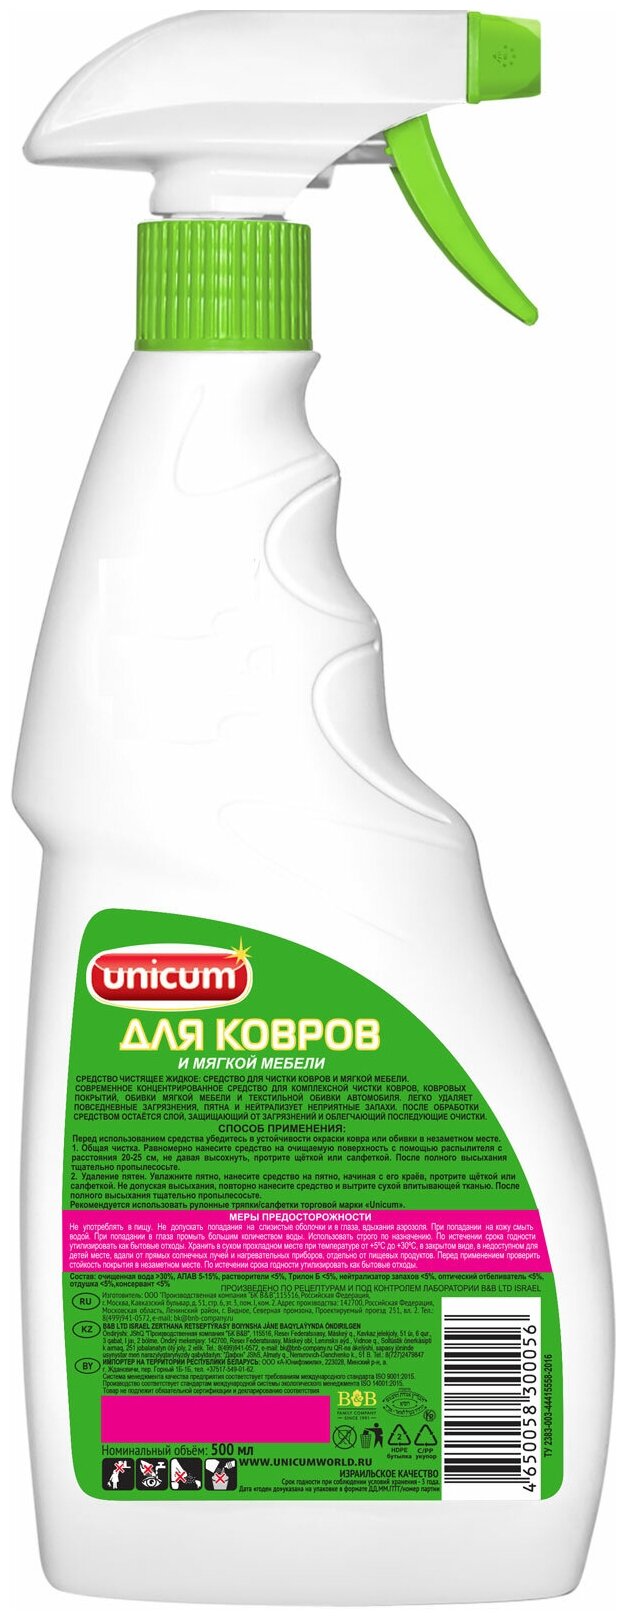 Unicum Спрей для чистки ковров и мягкой мебели